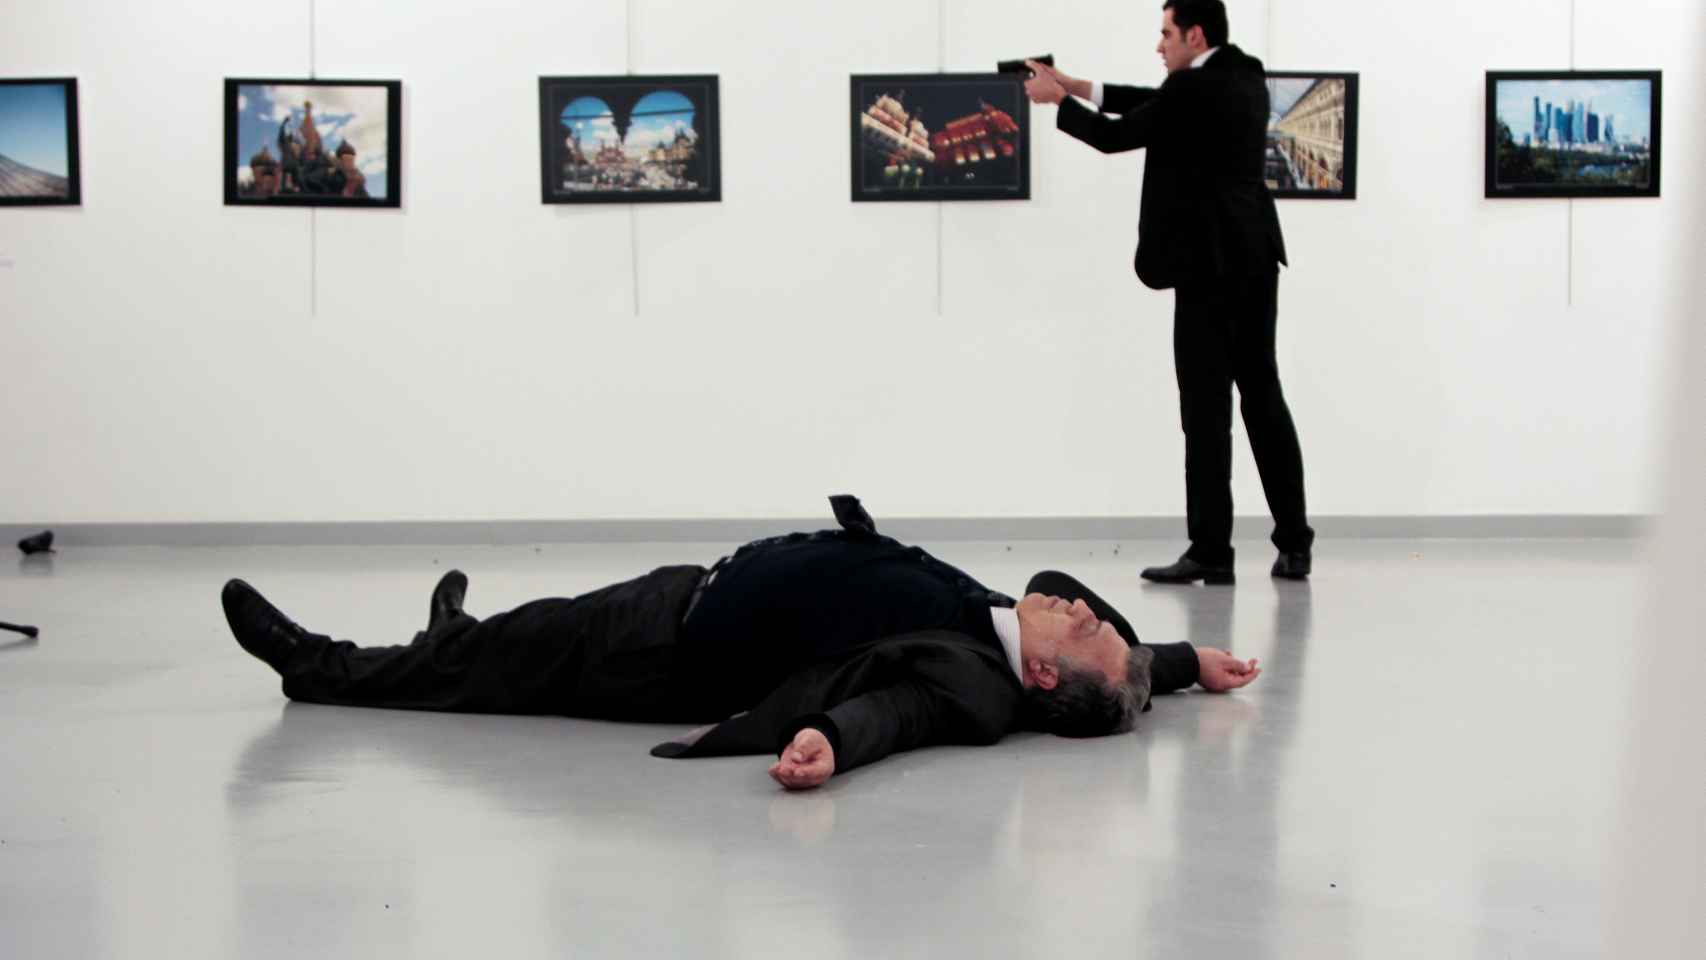 El embajador ruso en Turquía yace en el suelo tras ser disparado por Mevlut Mert Altintas.